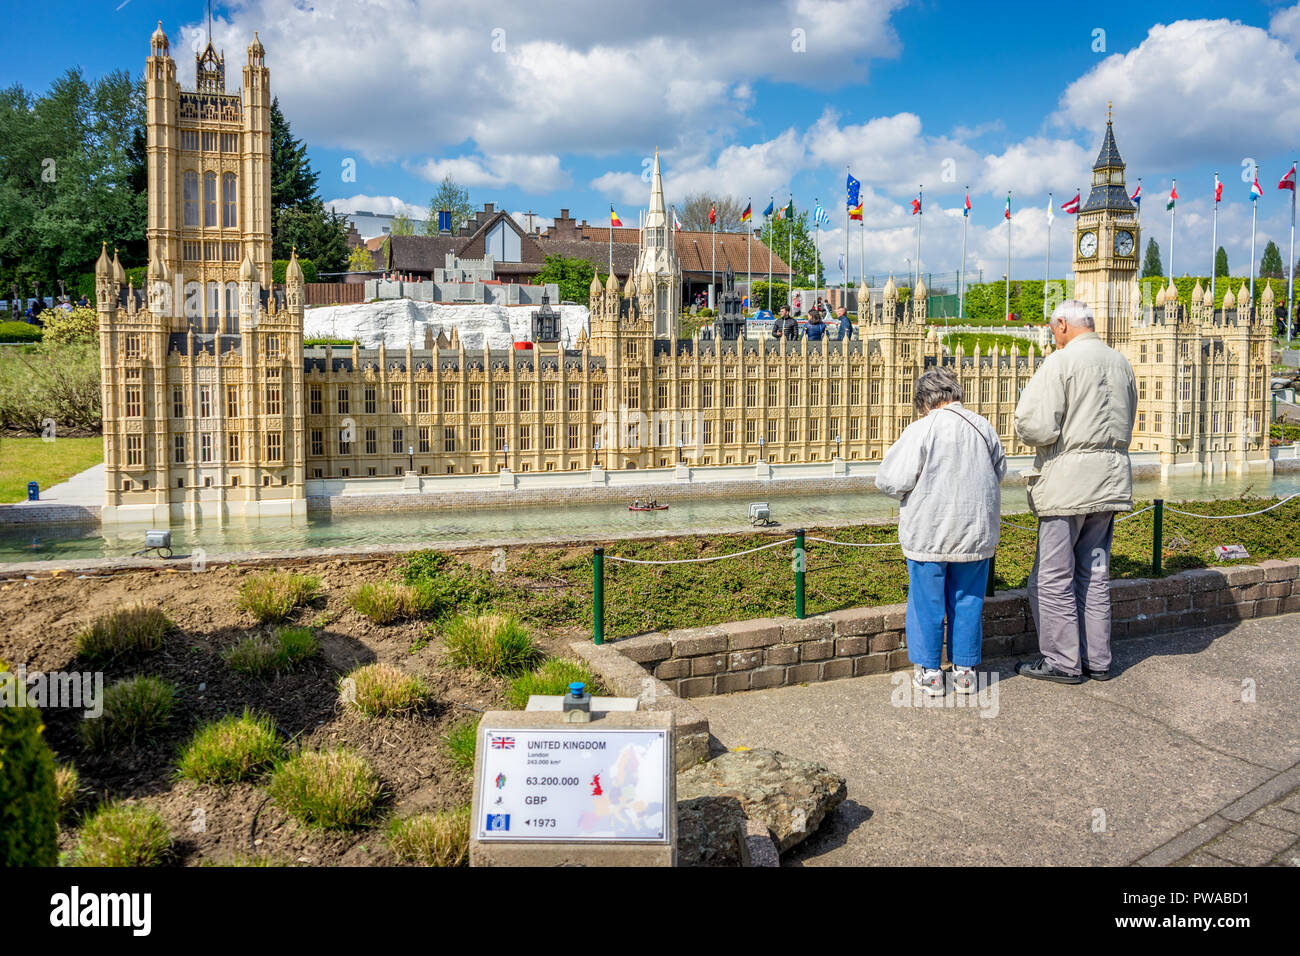 Bruxelles, Belgique - 17 Avril 2017 : Miniatures au parc Mini-Europe - reproduction de la le palais de Westminster à Londres, Royaume-Uni, Europe, Brexit Banque D'Images